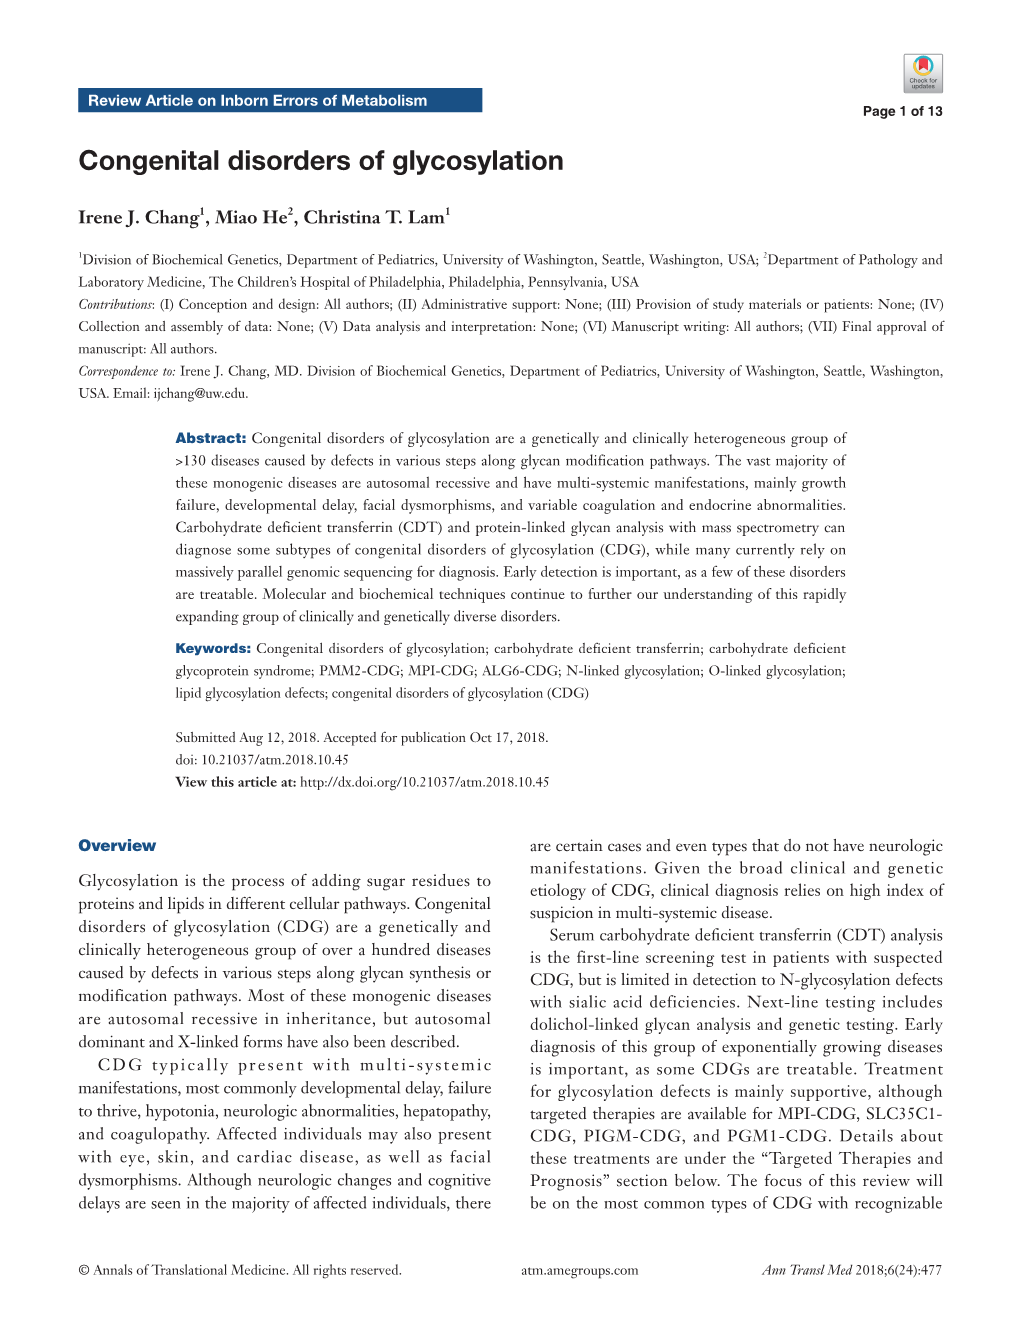 Congenital Disorders of Glycosylation